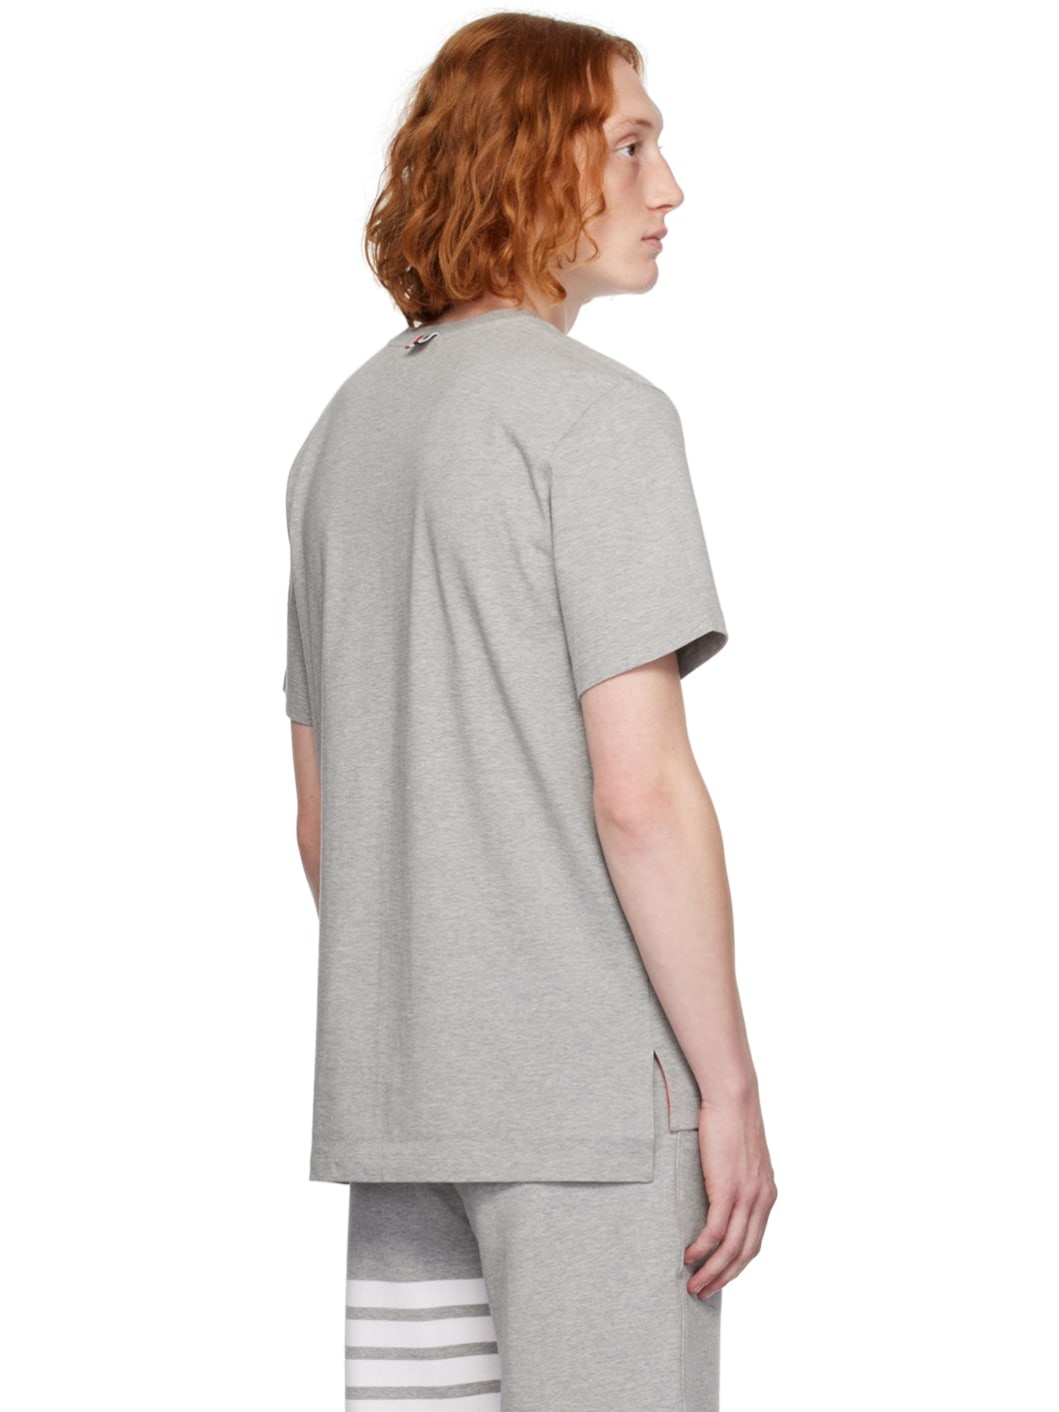 Gray Tennis-Tail T-Shirt - 3